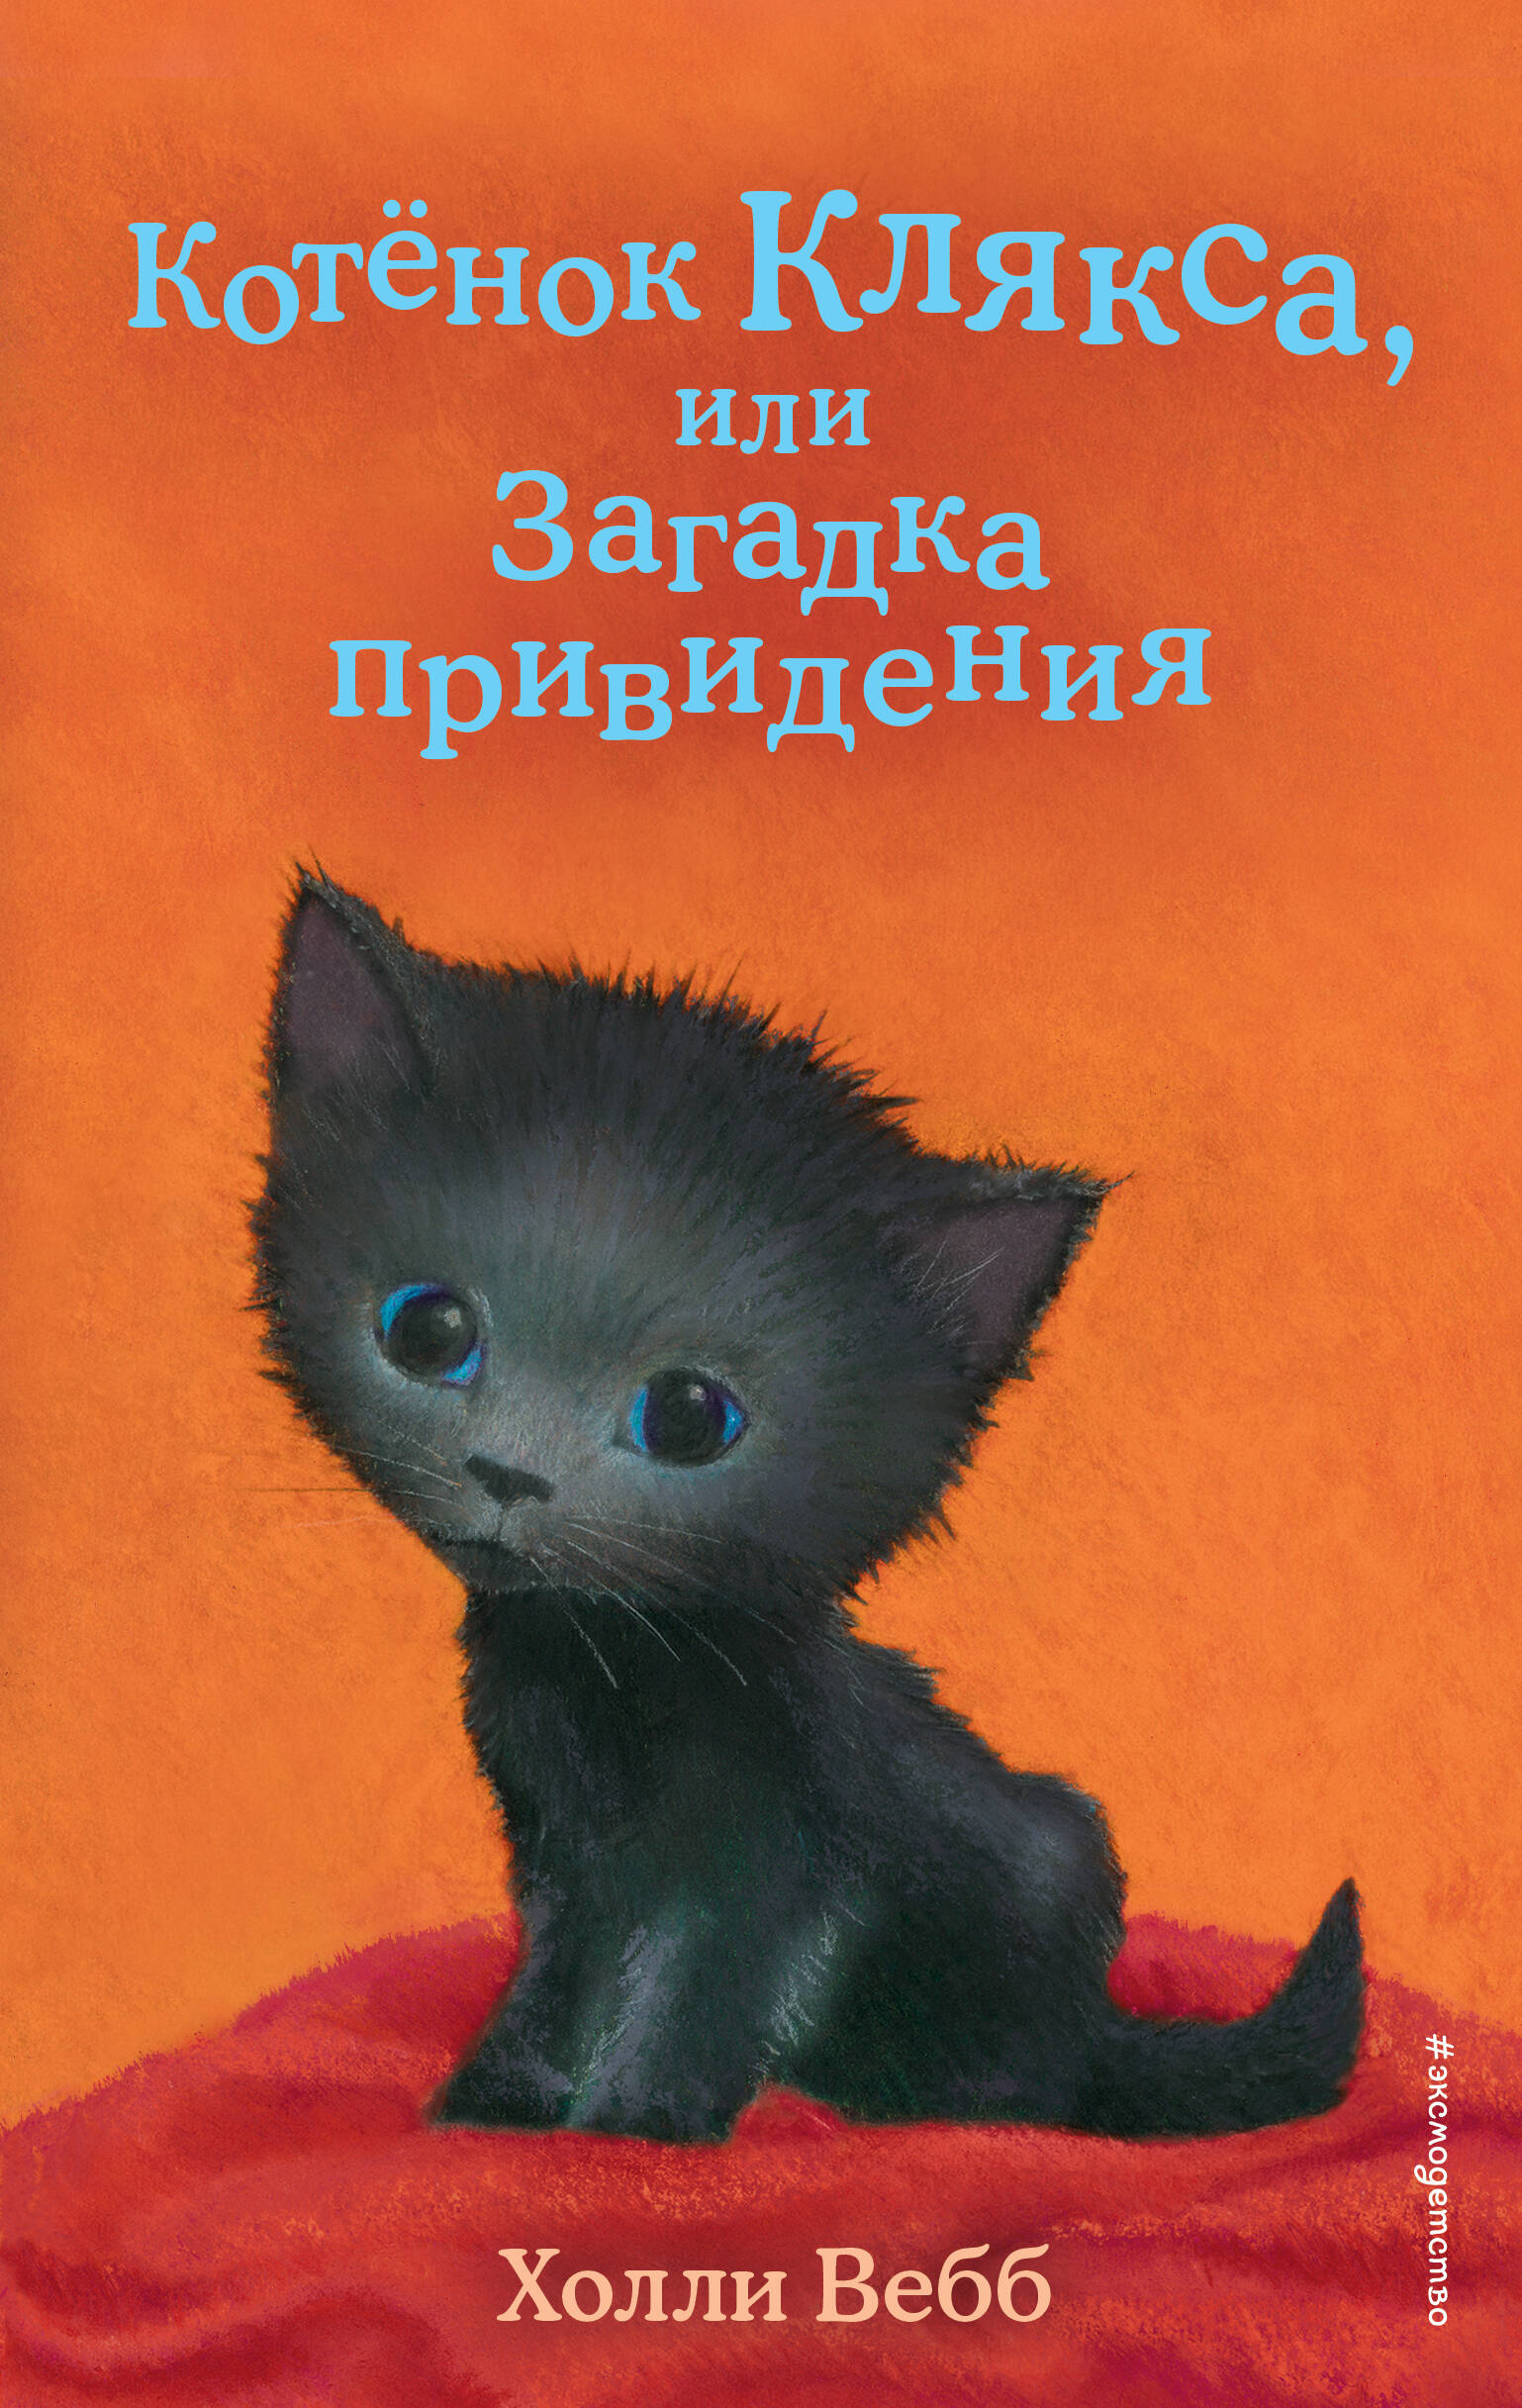 Котенок Клякса, или Загадка привидения (выпуск 44) вебб холли котенок клякса или загадка привидения выпуск 44